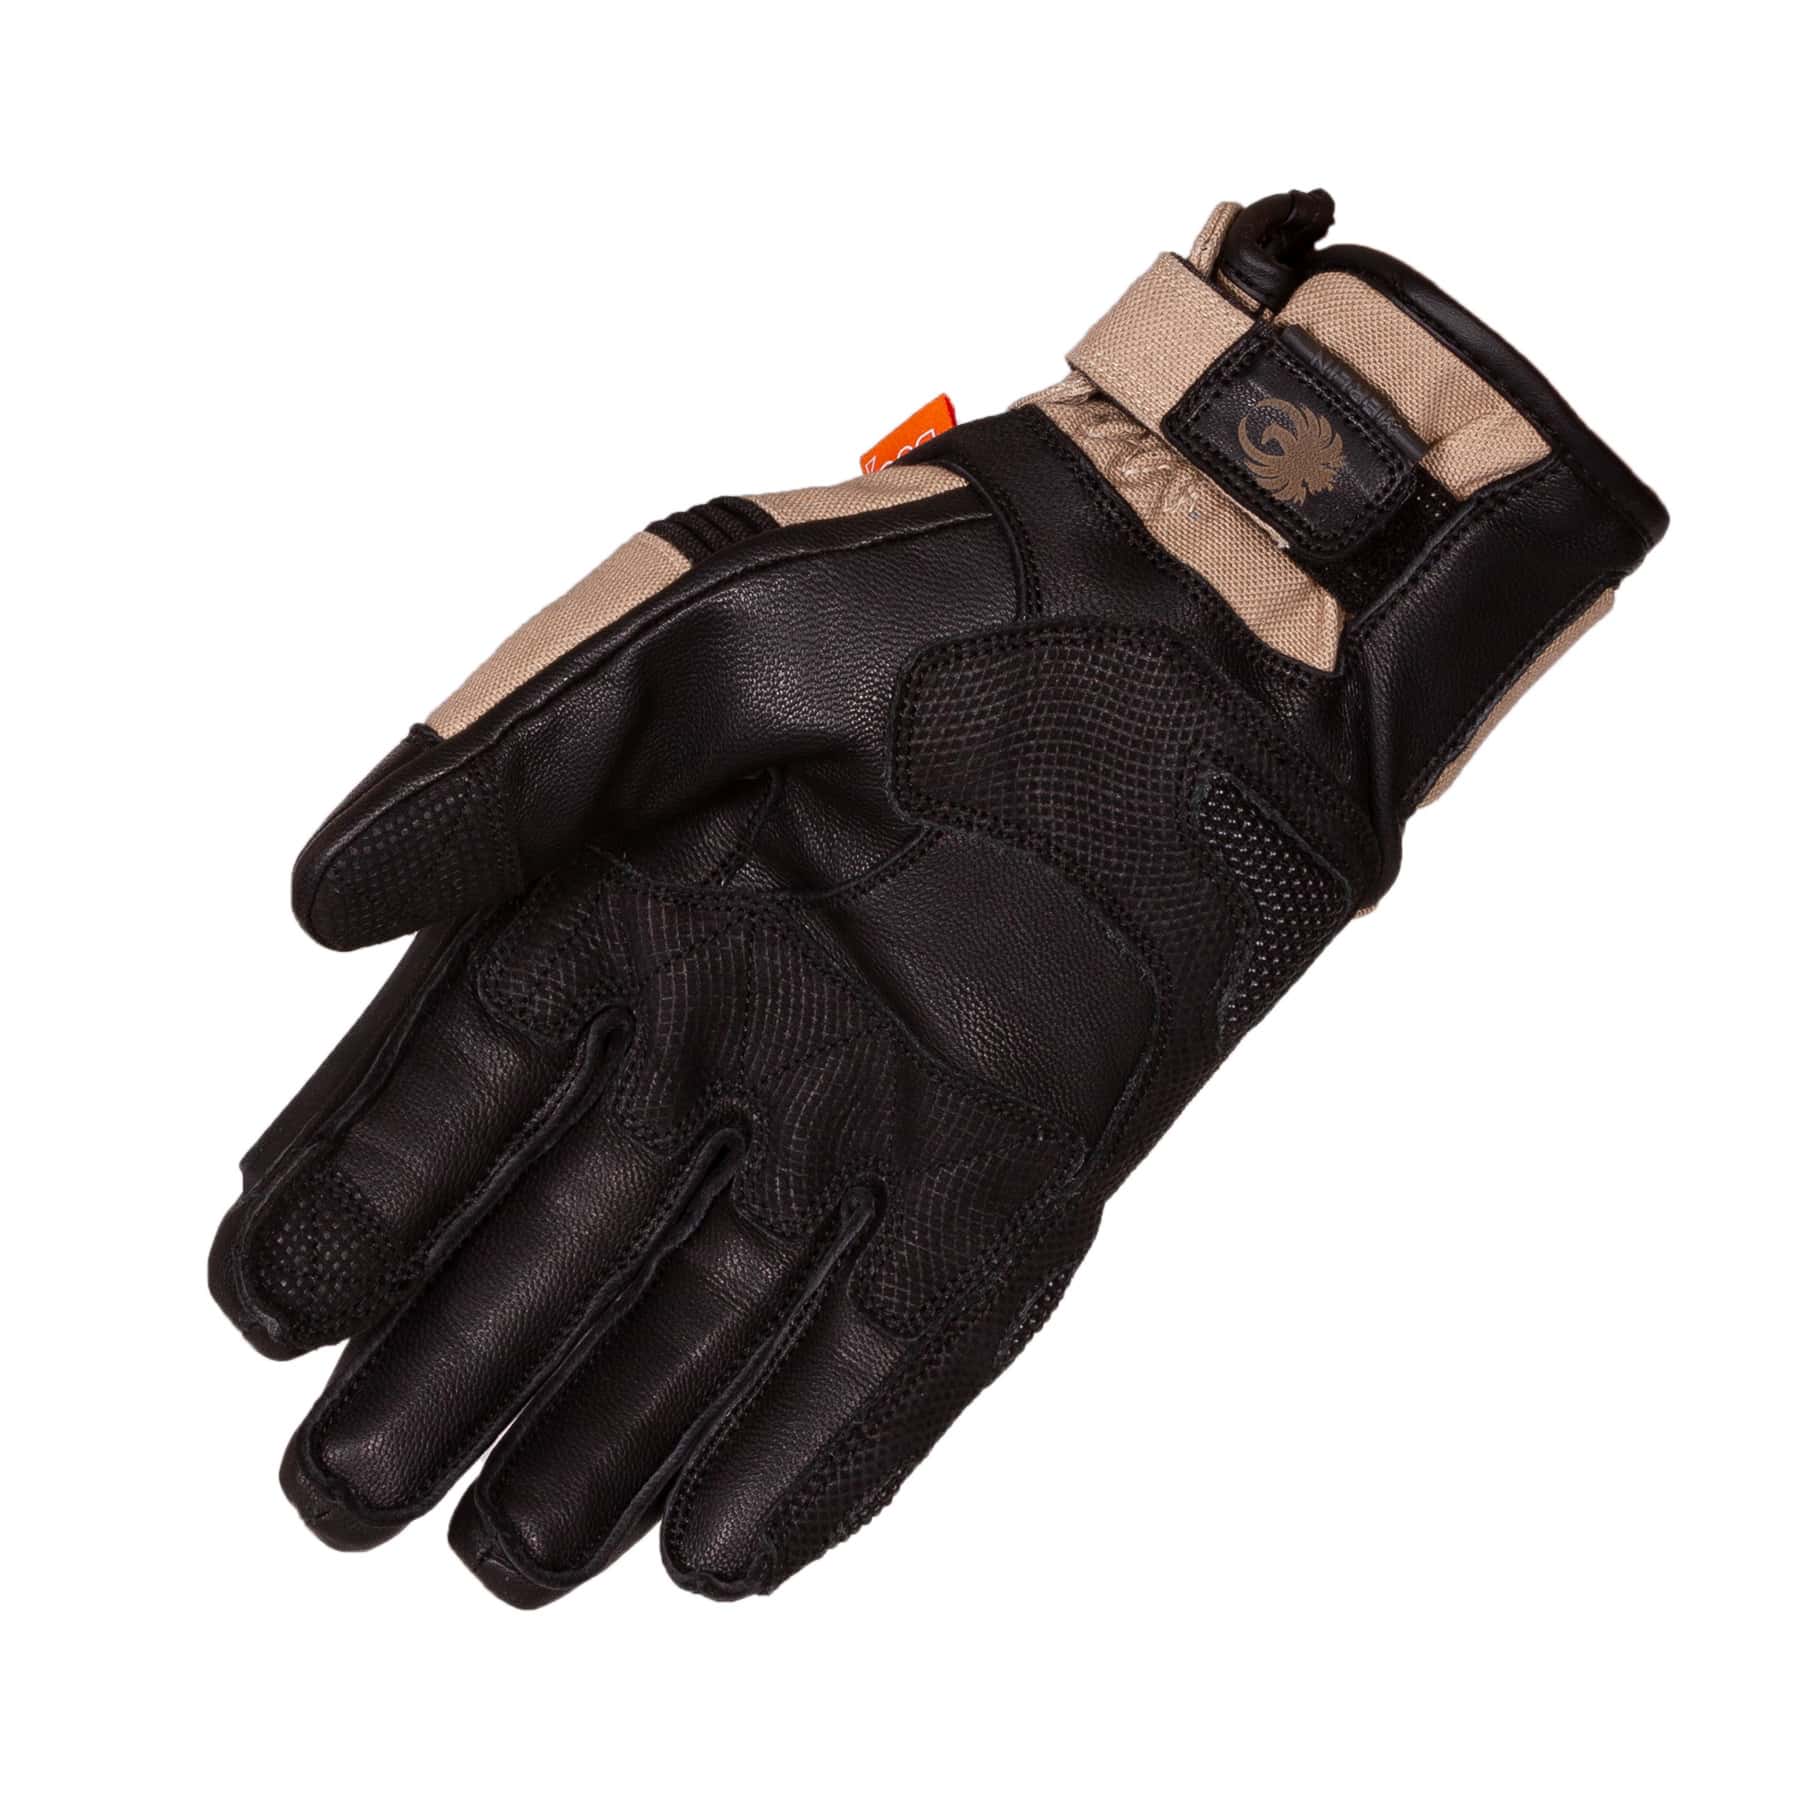 Merlin Mahala Waterproof Explorer motorcycle gloves in black/sand